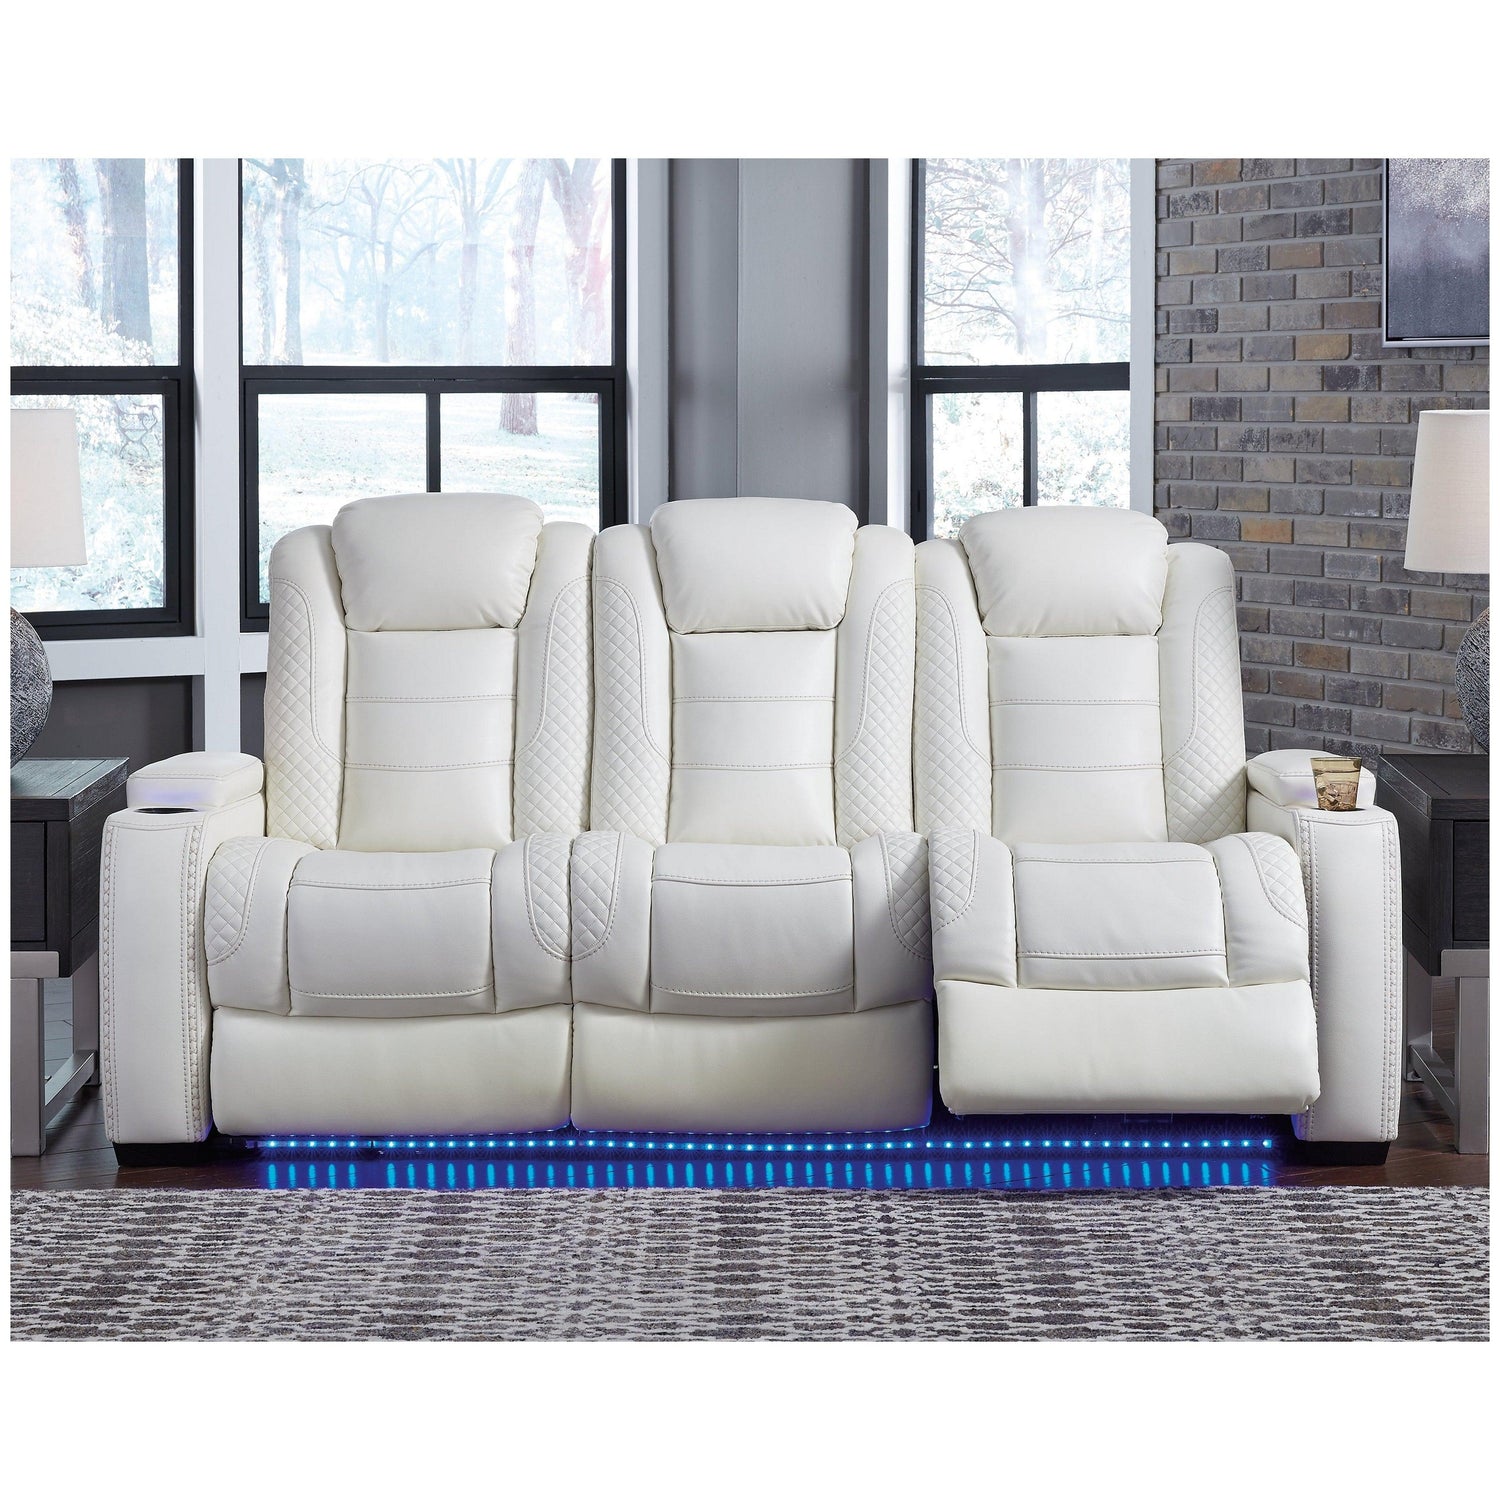 Sillón reclinable Samir Powerlift – Beck's Furniture